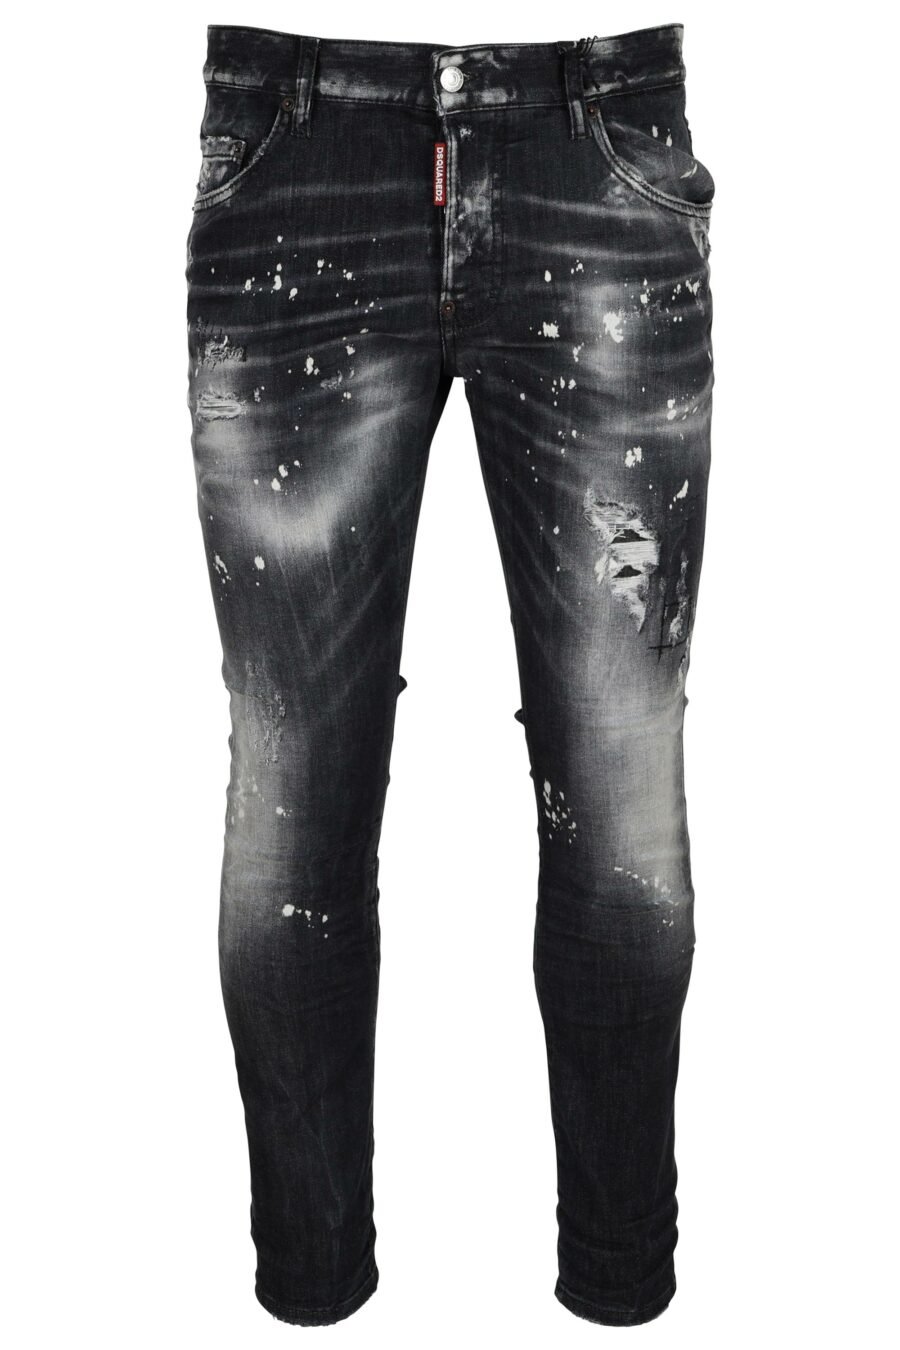 Schwarze Jeans "super twinky jean" mit Rissen und halb zerschlissen - 8054148473945